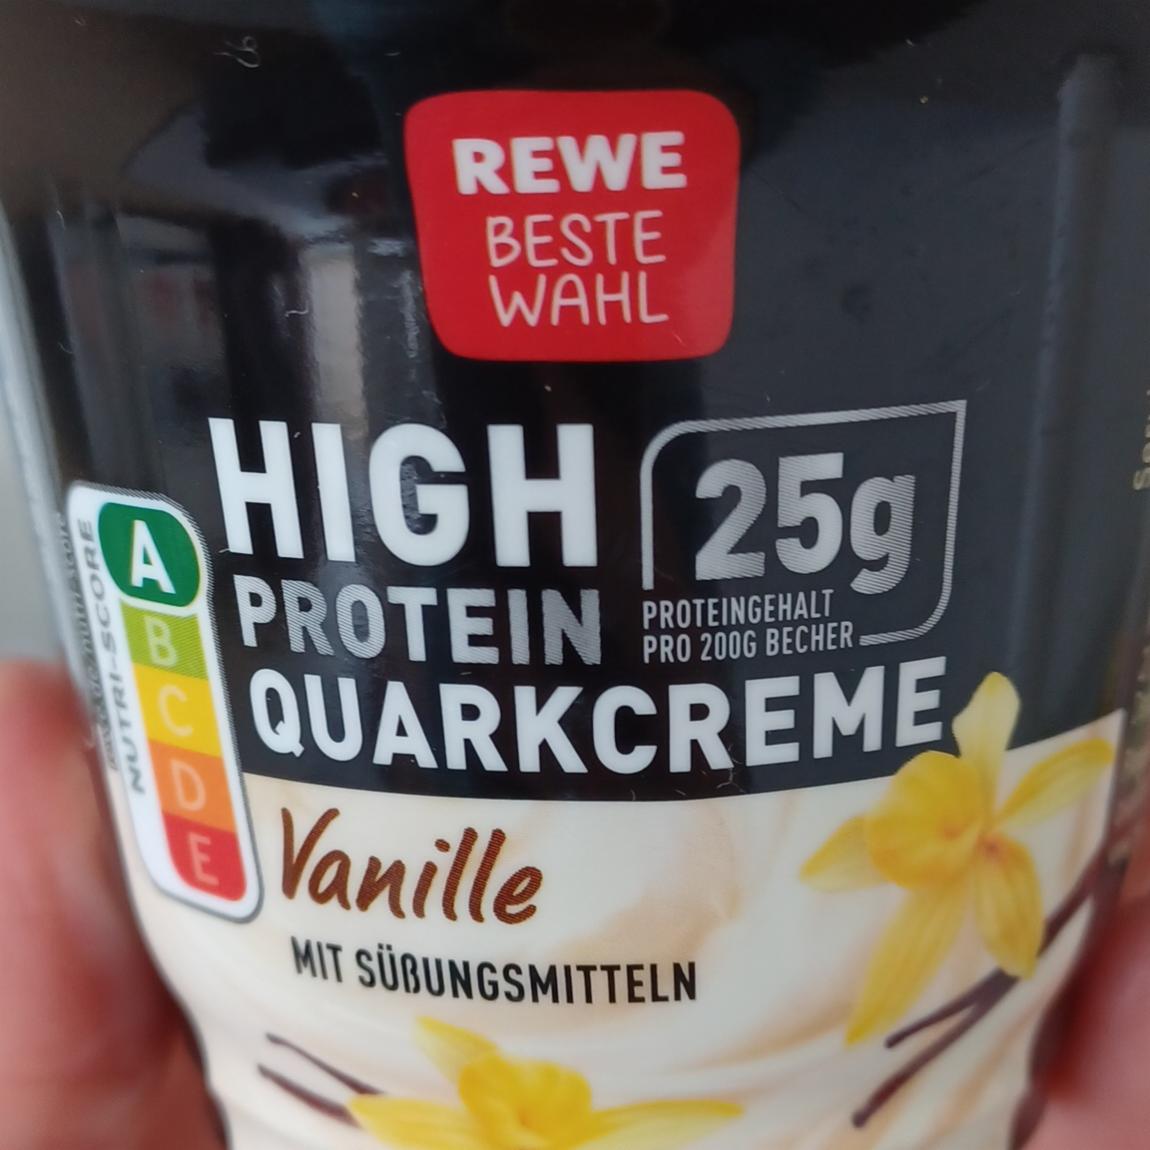 Fotografie - High Protein Quarkcreme Vanille REWE Beste Wahl